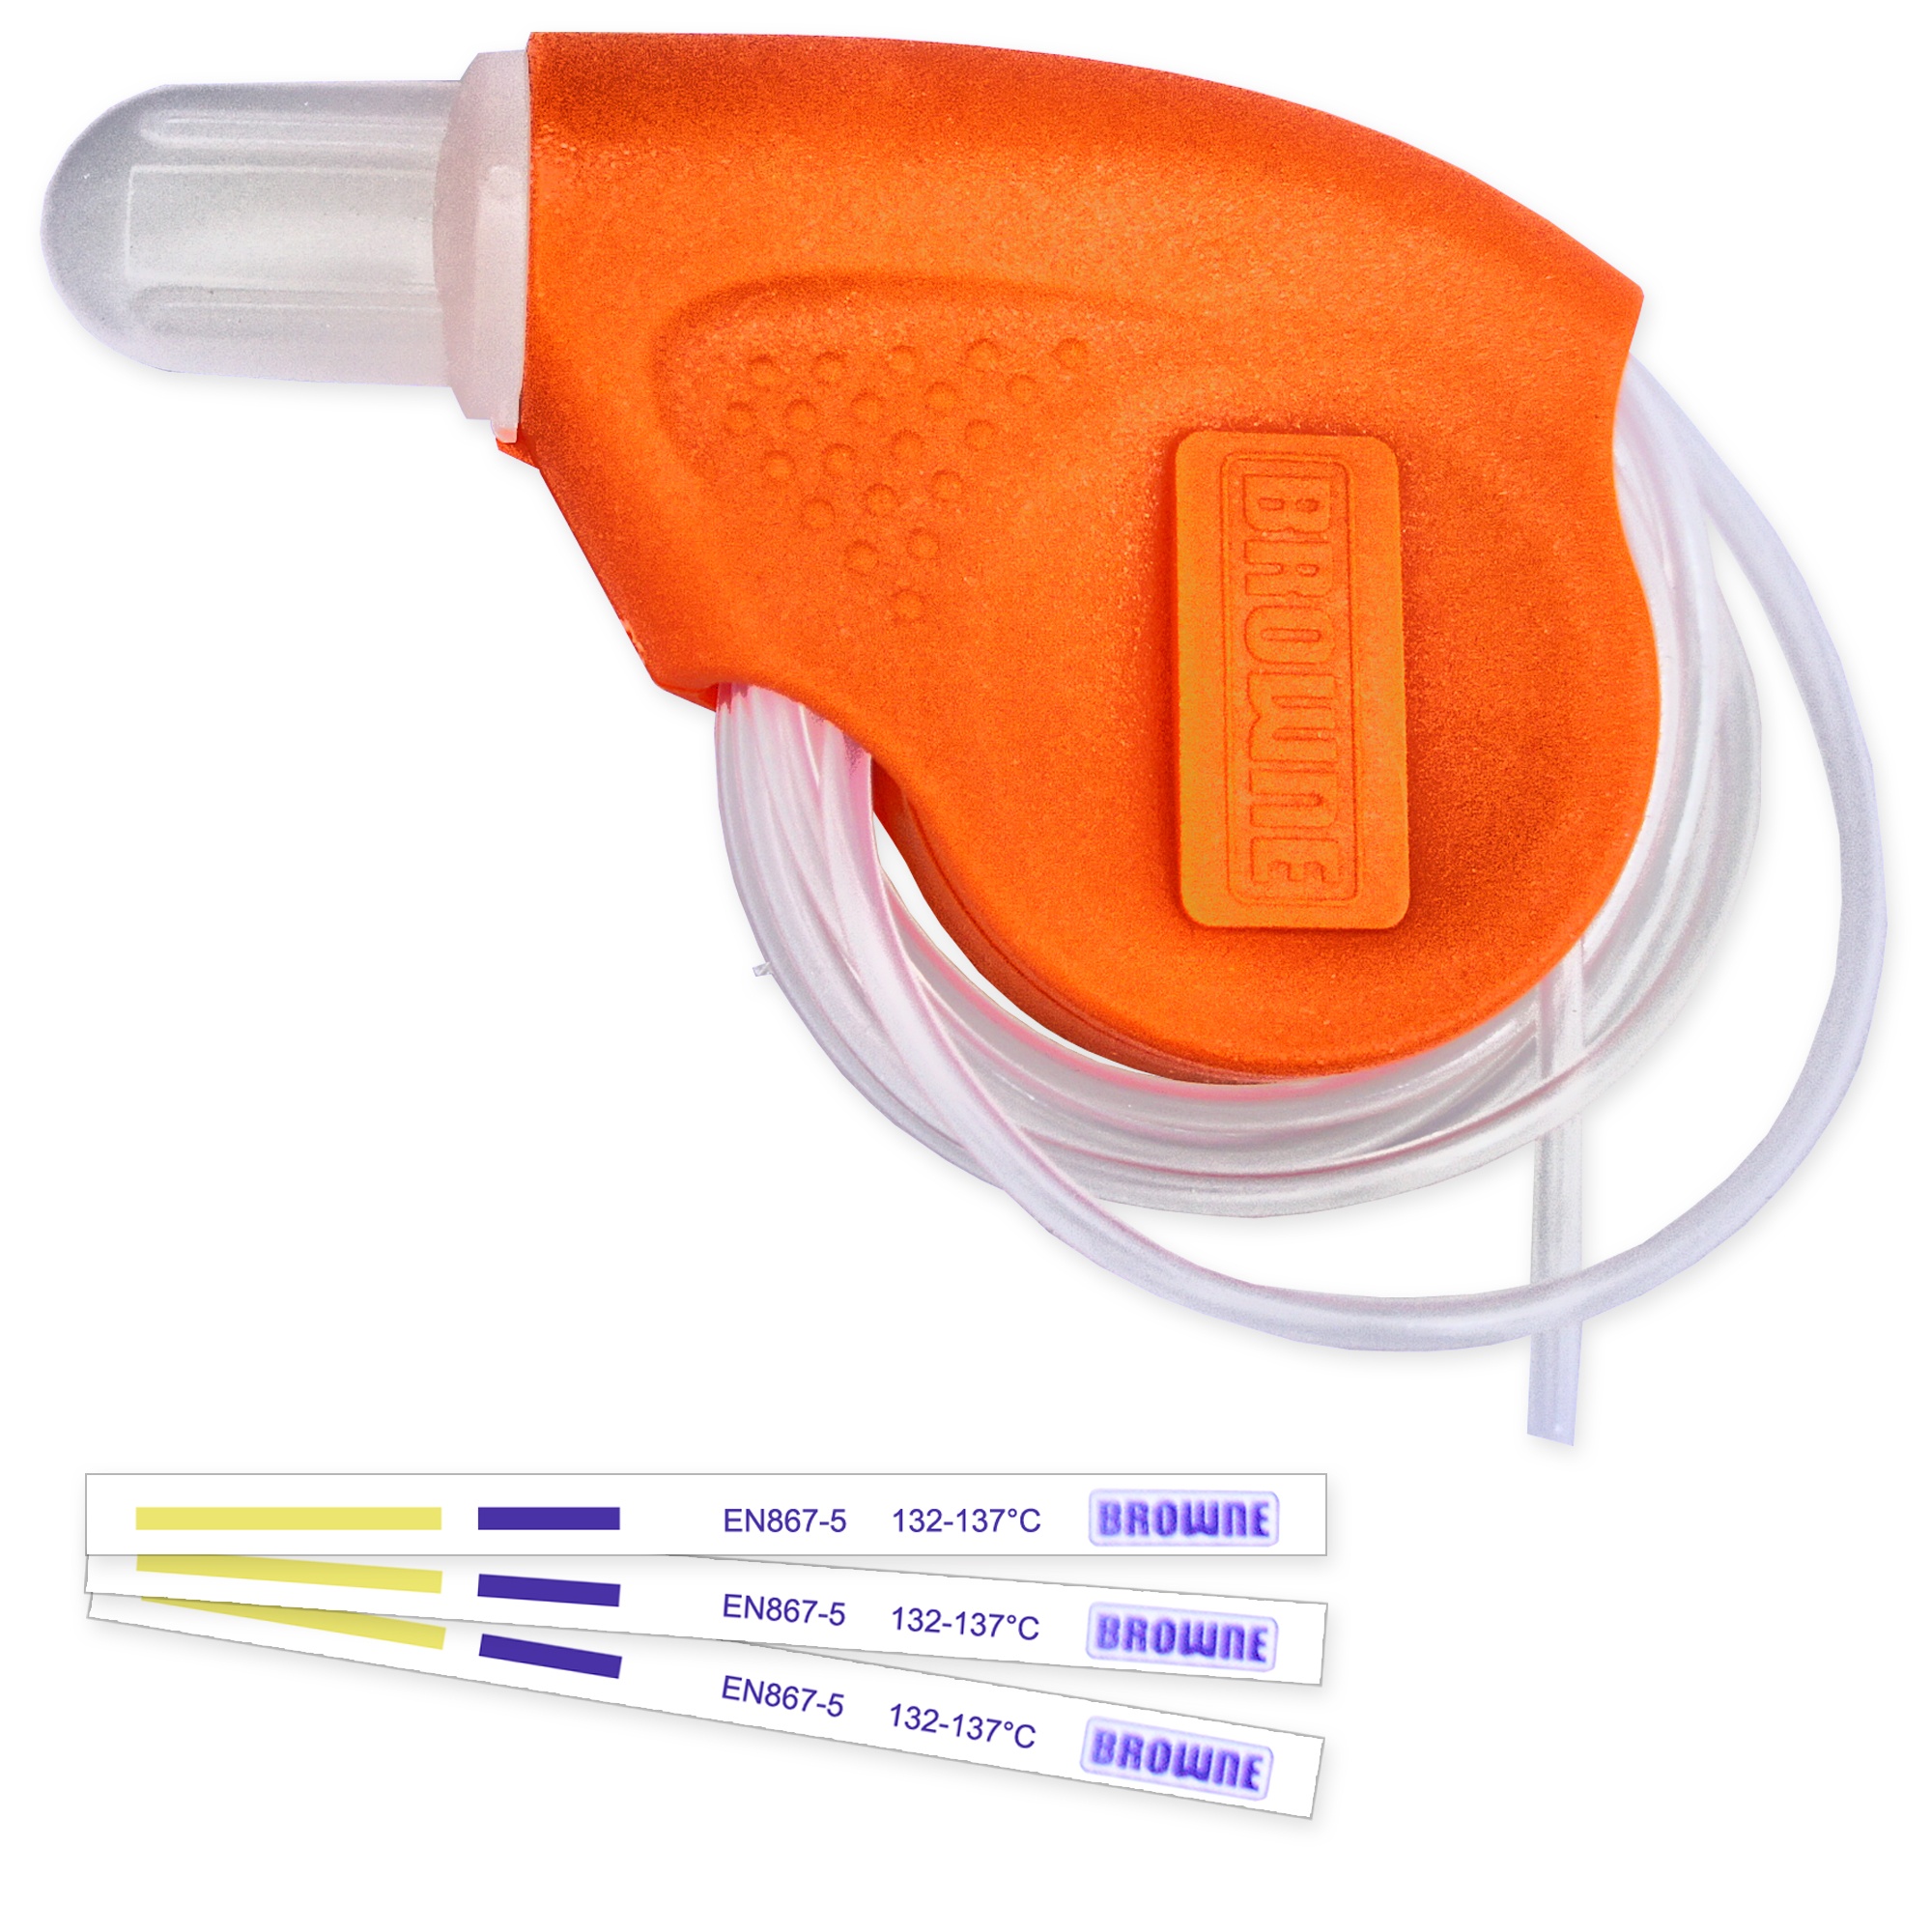 Chargenkontrolle - TST Helix für die Dampfsterilisation - Helix Test Image